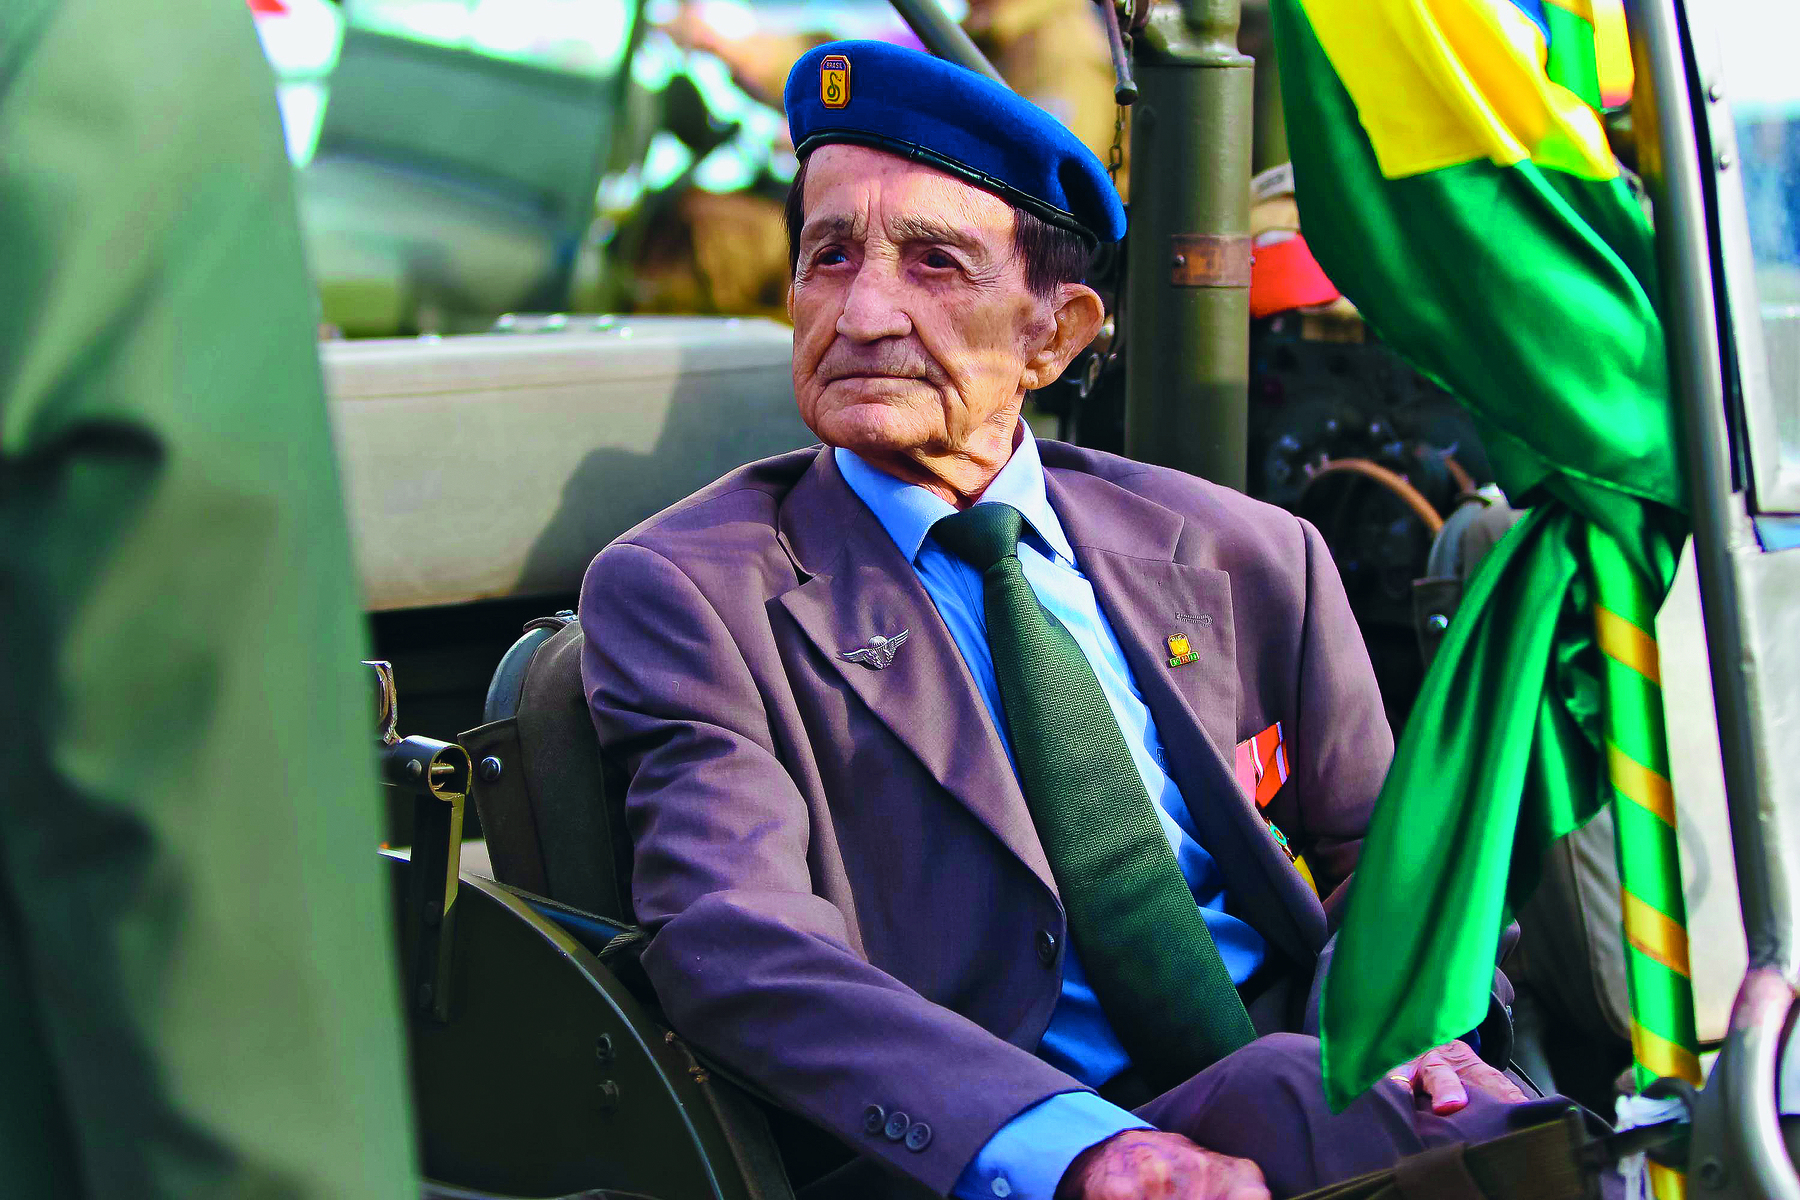 Fotografia. Nestor da Silva, senhor de terno e boina azul com o símbolo da FEB na frente. Está sentado perto de um mastro com uma bandeira do Brasil enrolada.